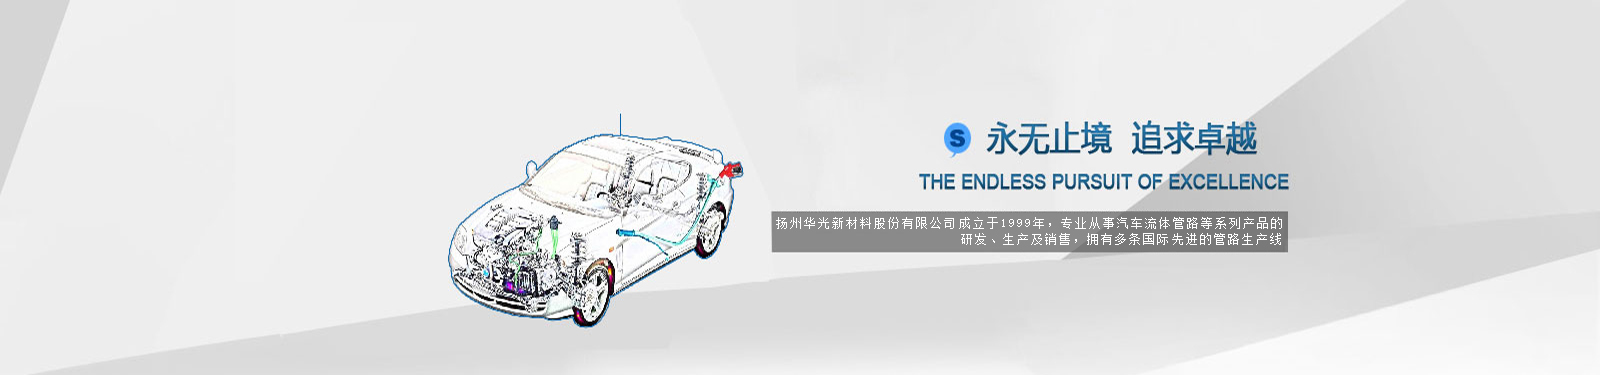 扬州华光新材料股份有限公司 专业生产研发轿车塑料加油管、金属加油管、轿车尼龙管、新能源汽车冷却管